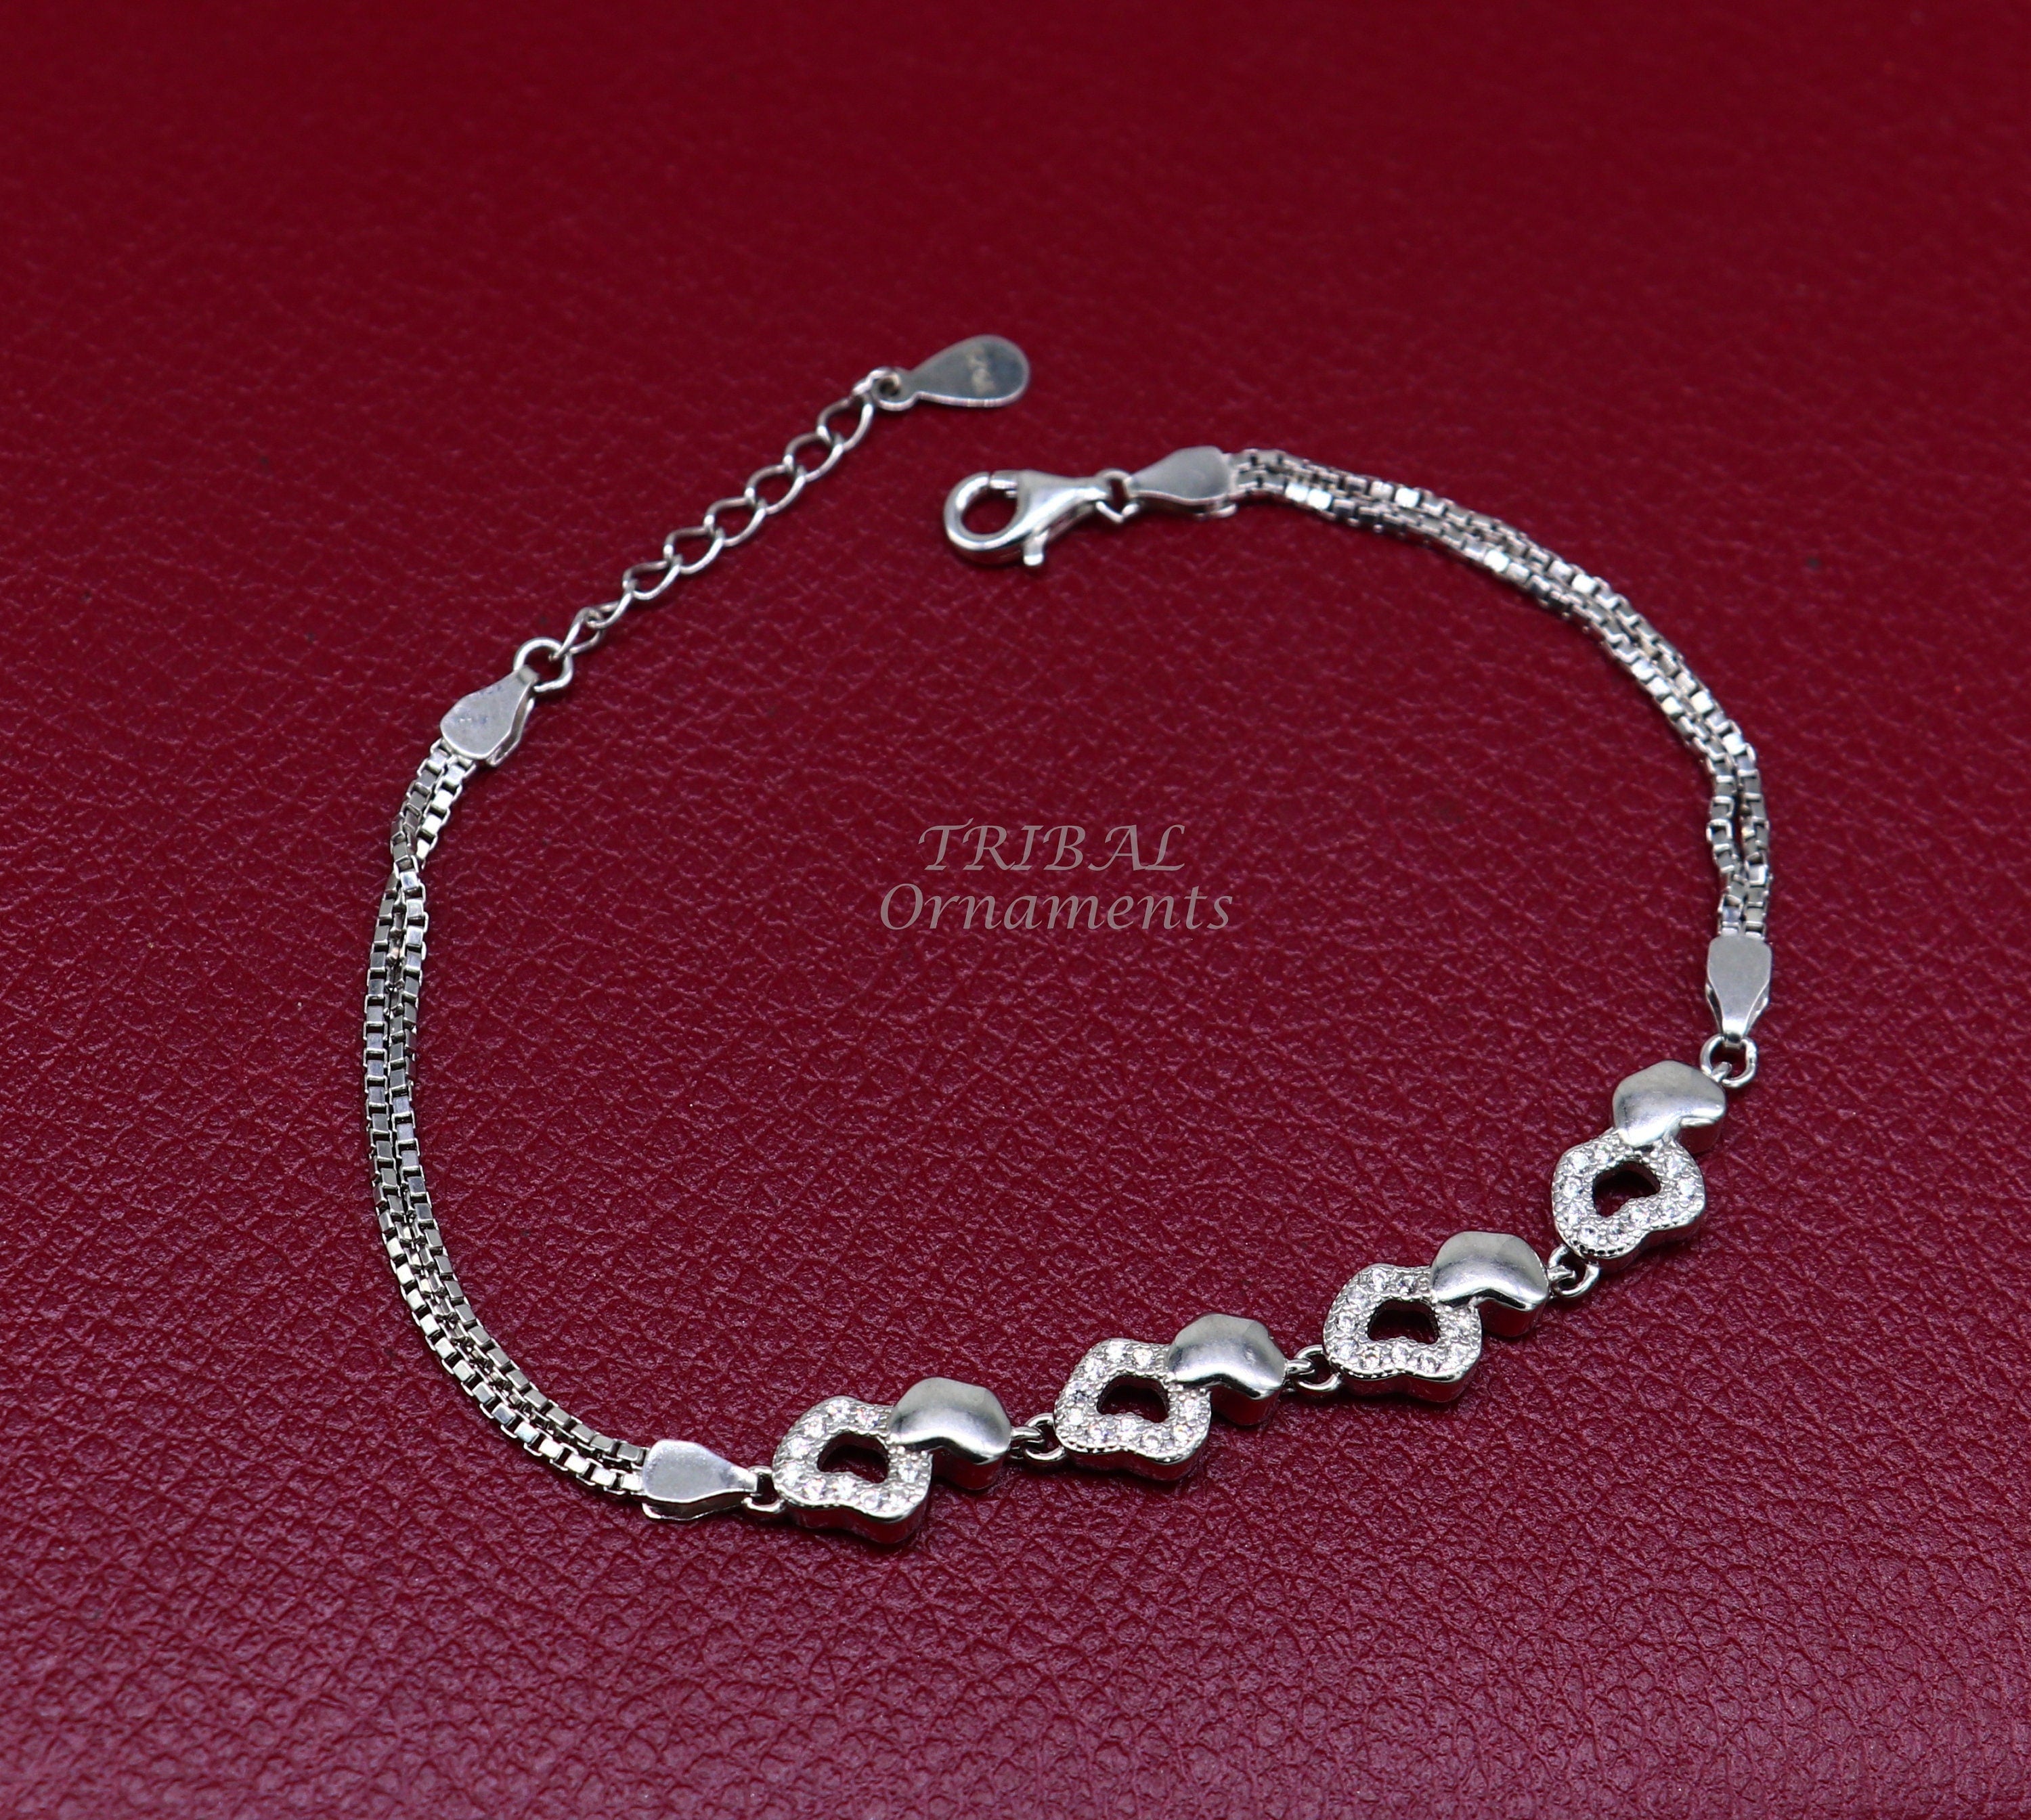 Buy dc jewels Sterling Silver Bracelet Kada for Women55mm at Amazonin